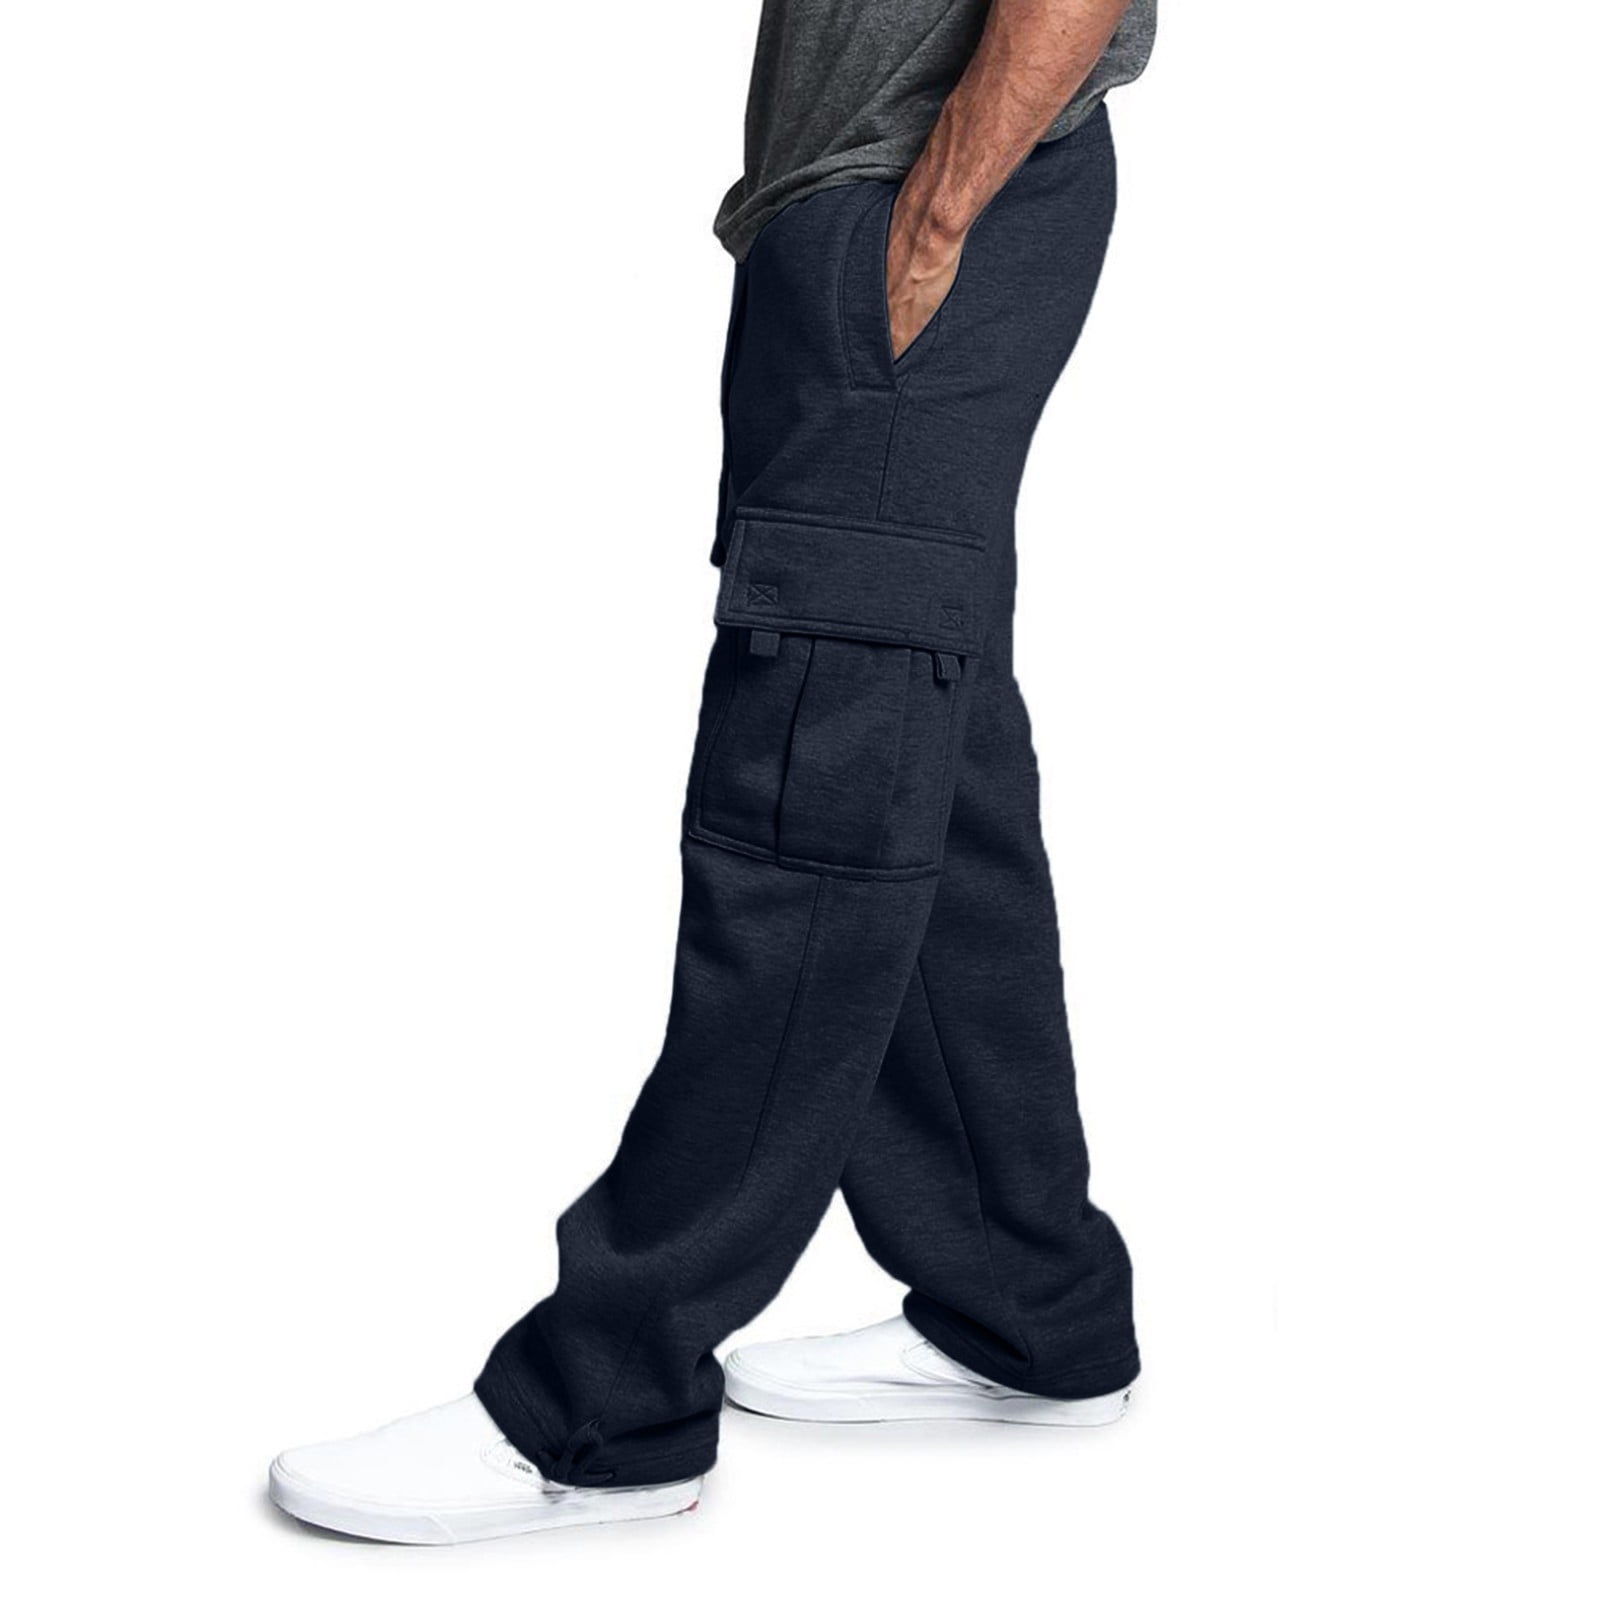 Aayomet Sweatpants For Men Men's Lightweight Sweatpants with Pockets ...